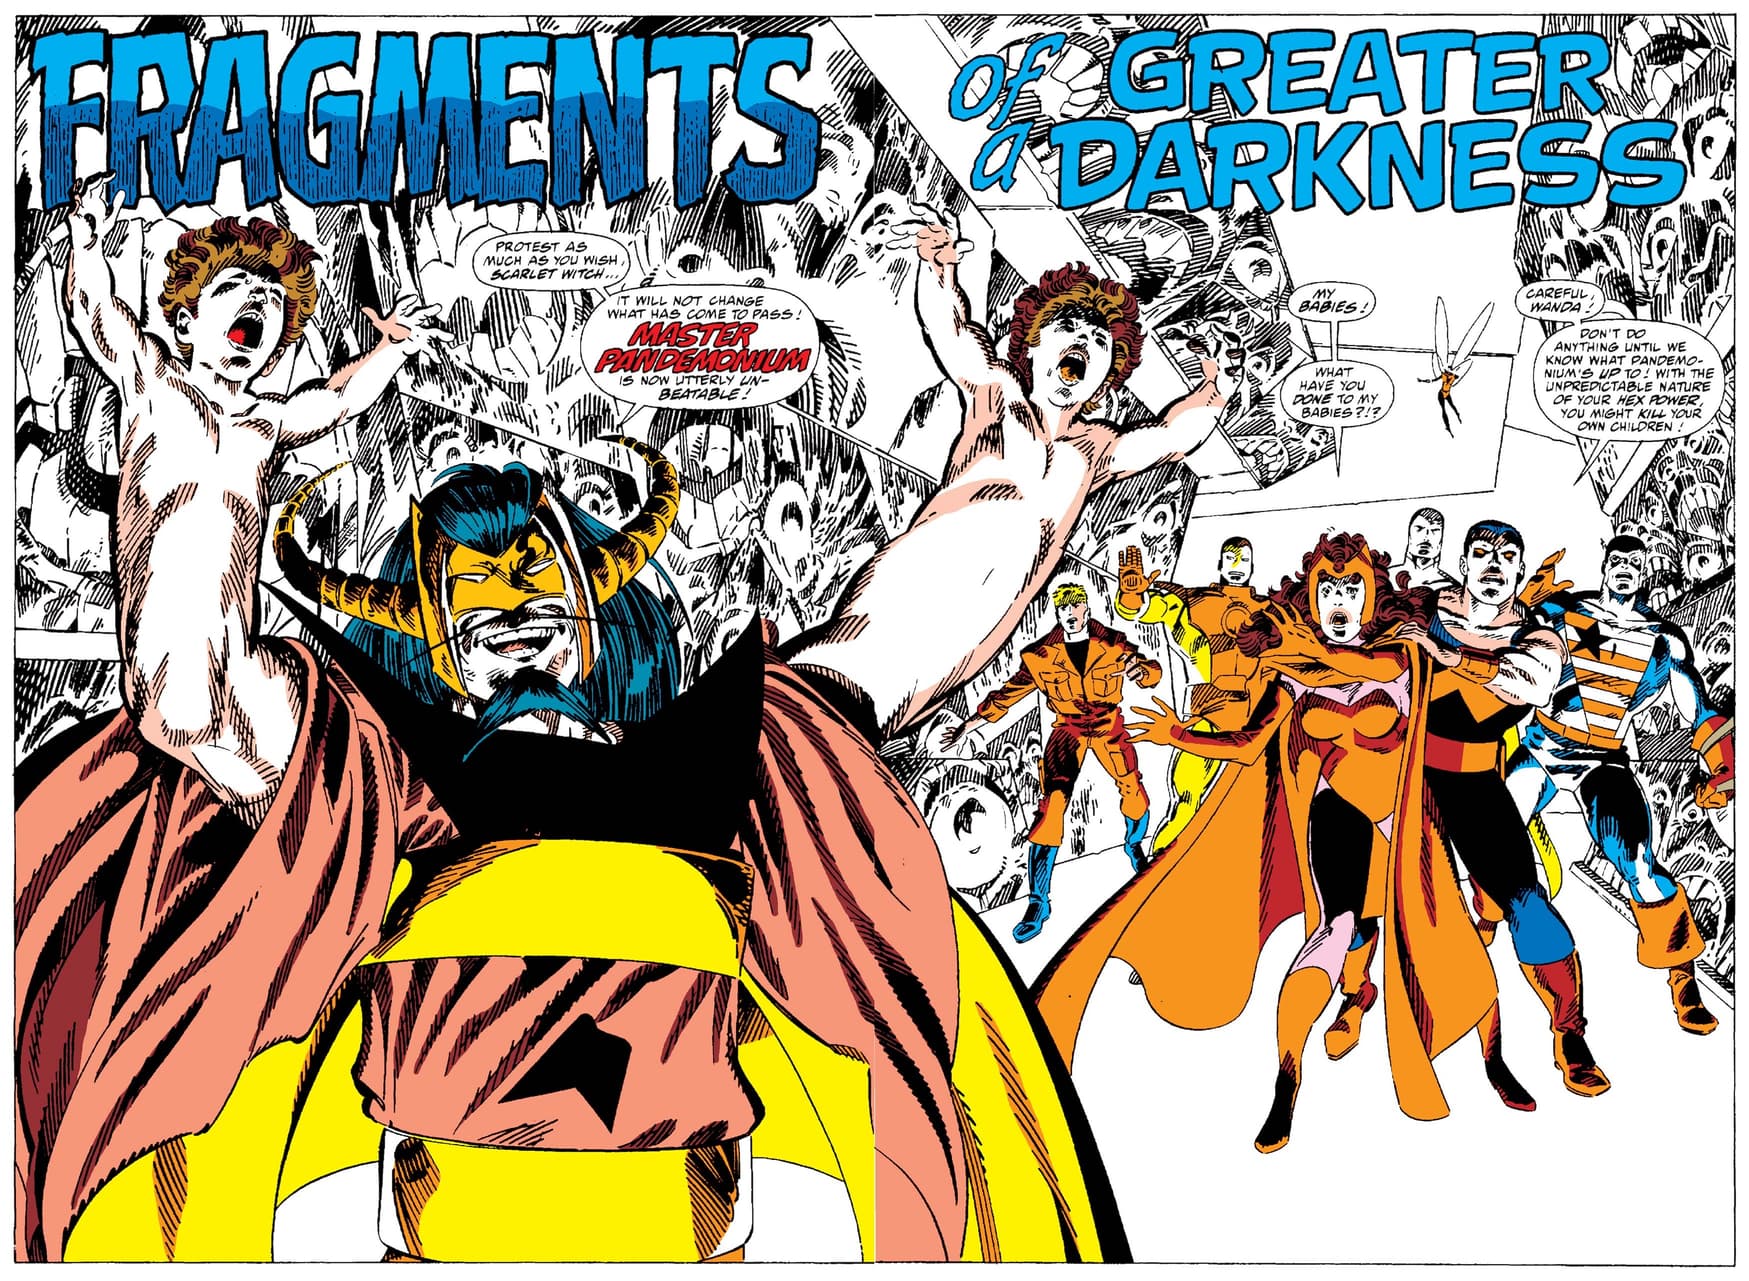 WEST COAST AVENGERS (1985) #52. Read Master Pandemonium’s complete origin in issue #51!